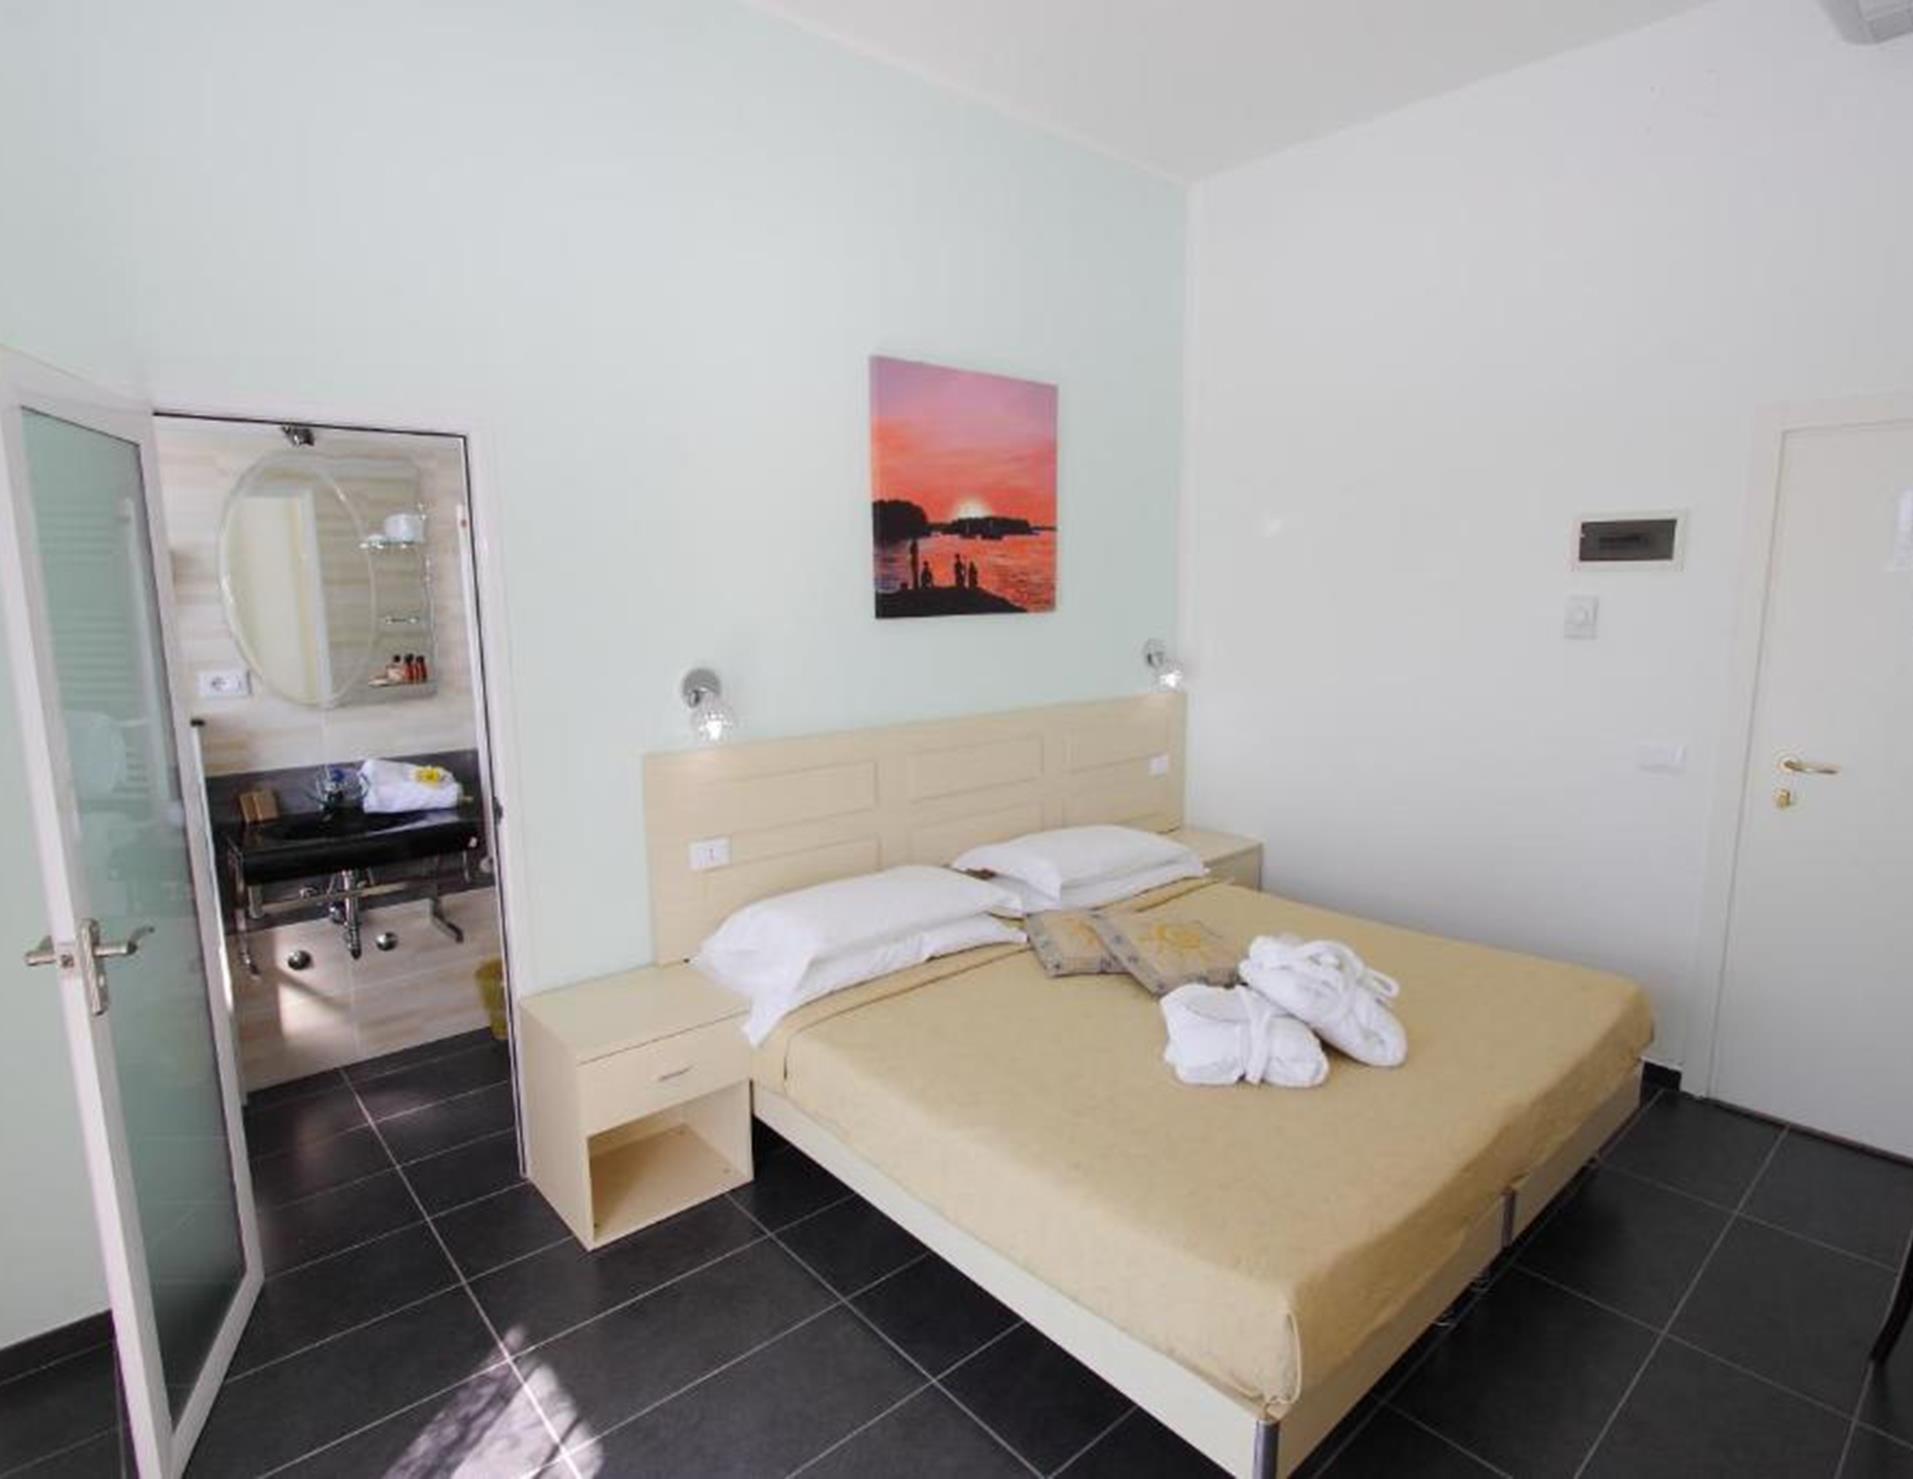 Hotel Spiaggia Marconi - Room 5